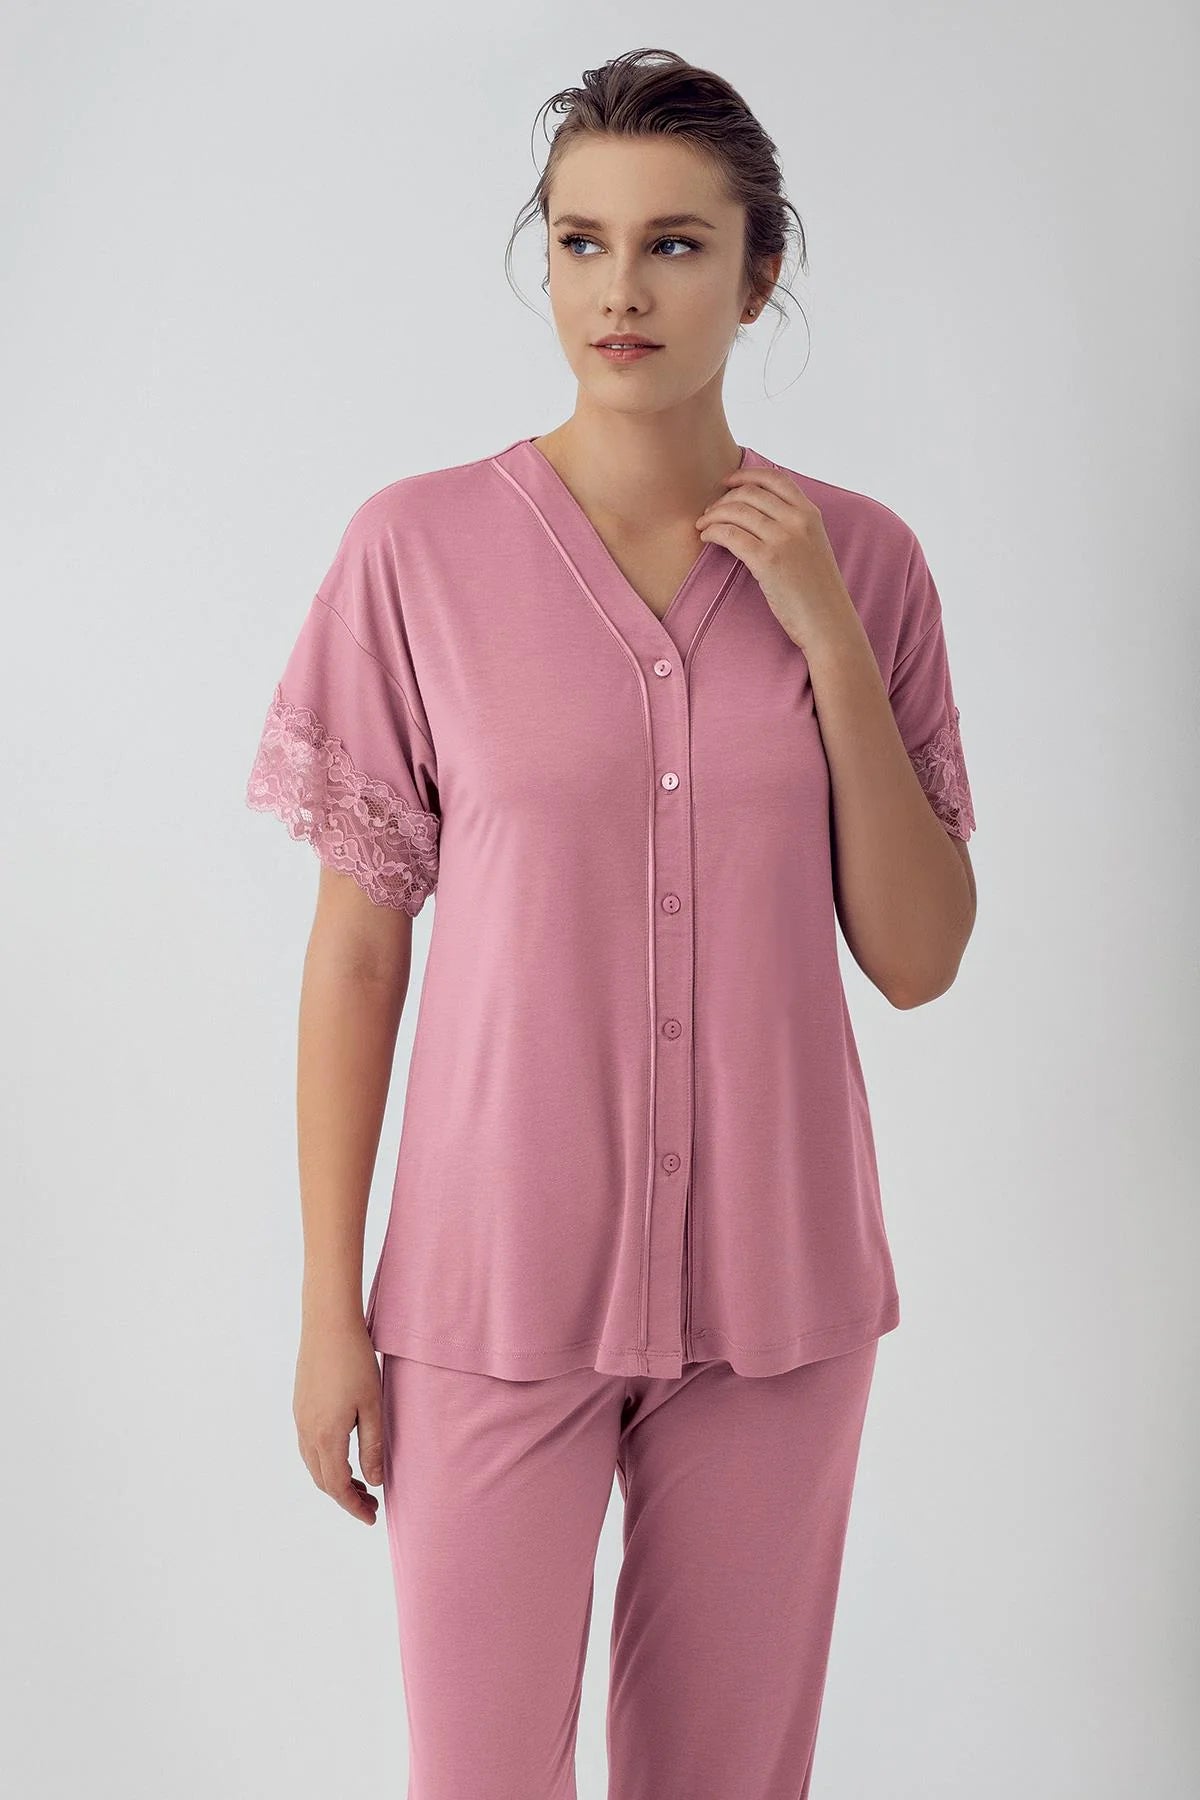 Shopymommy 16211 Lace Sleeve Maternity & Nursing Pajamas Dried Rose